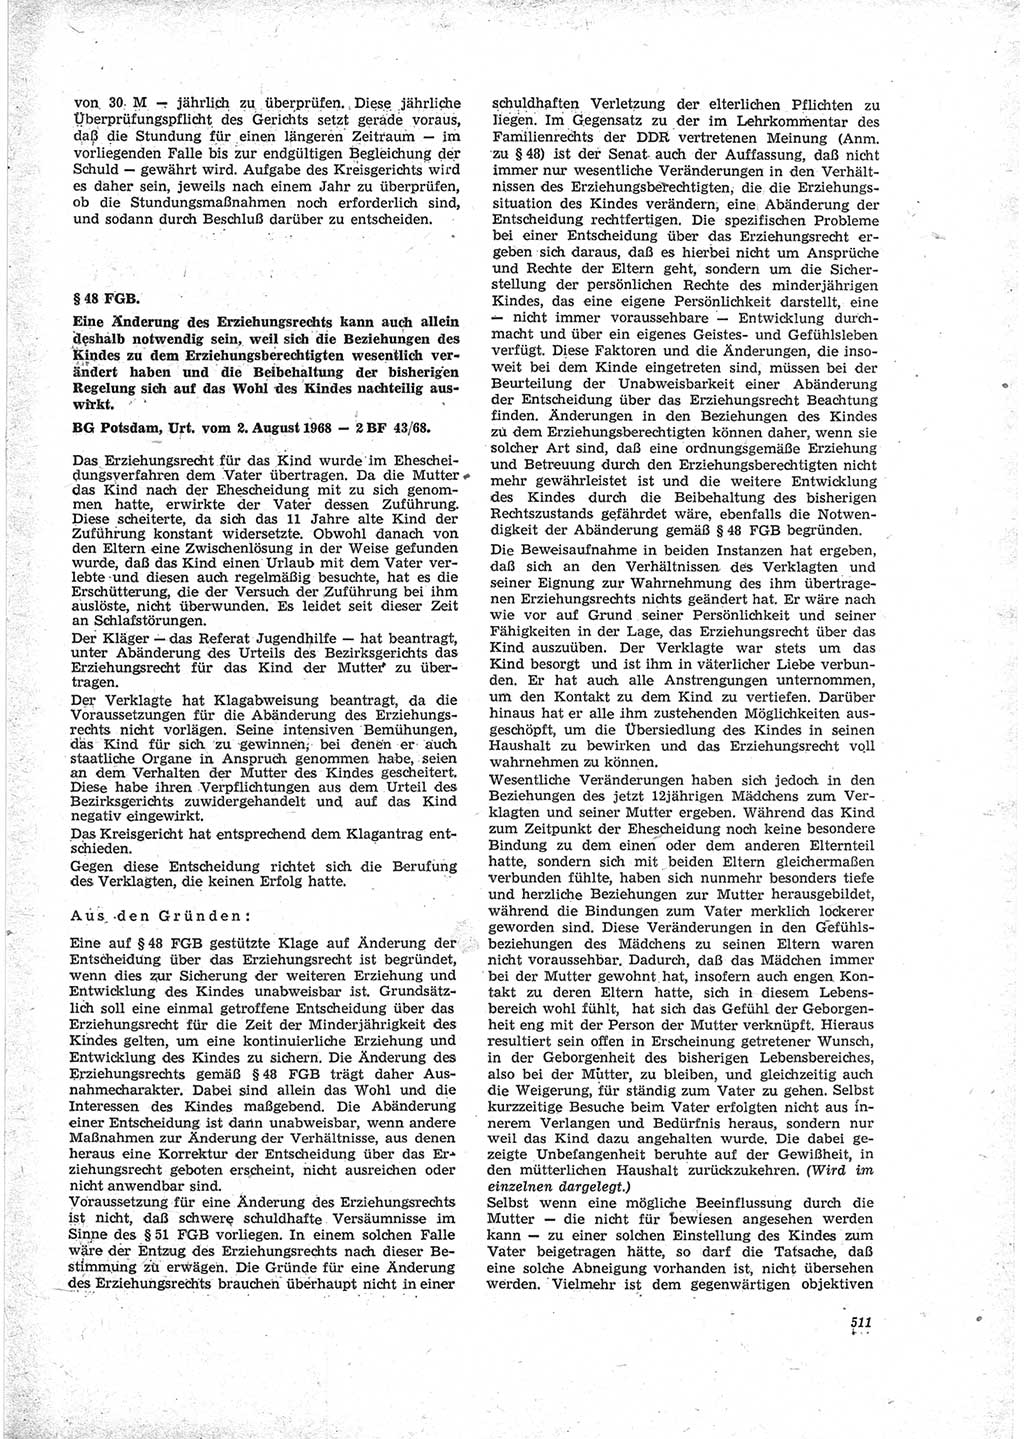 Neue Justiz (NJ), Zeitschrift für Recht und Rechtswissenschaft [Deutsche Demokratische Republik (DDR)], 23. Jahrgang 1969, Seite 511 (NJ DDR 1969, S. 511)